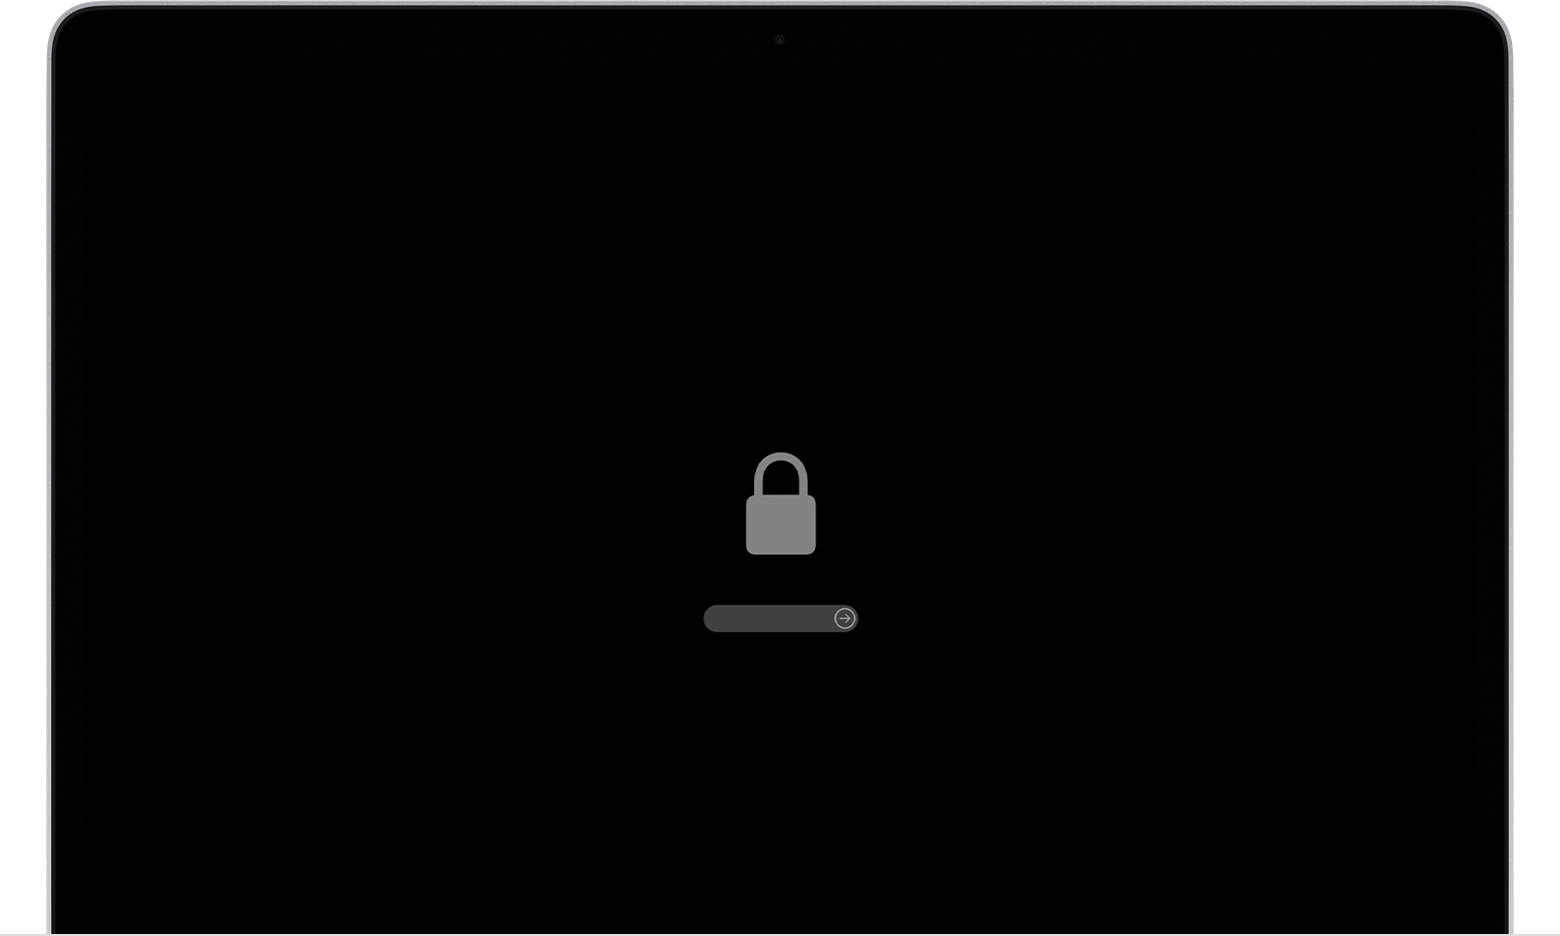 Úvodní obrazovka systému macOS s ikonou zámku firmwaru a polem pro zadání hesla